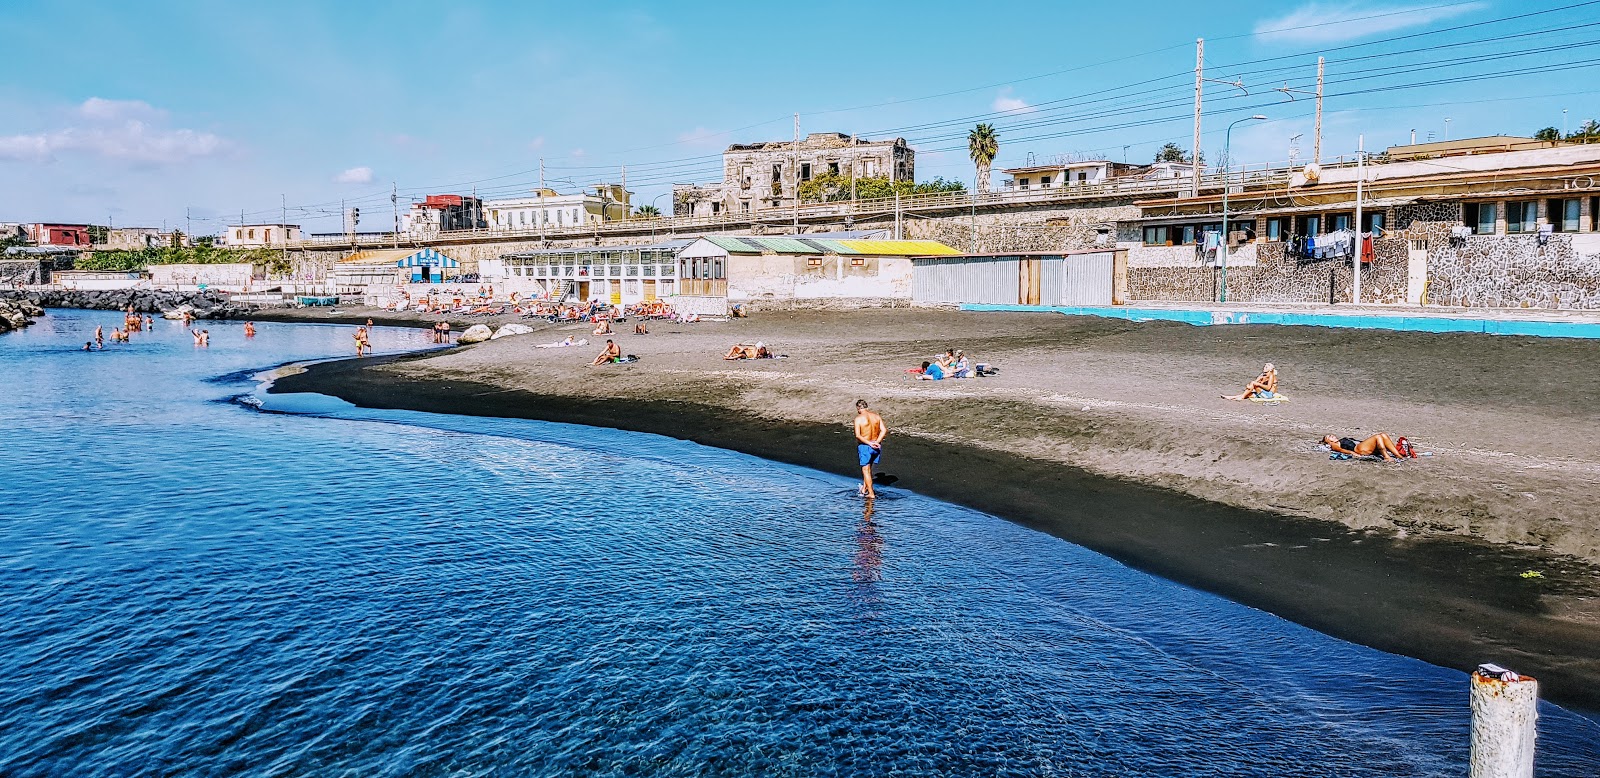 Foto af Spiaggia di via Calastro med blåt vand overflade